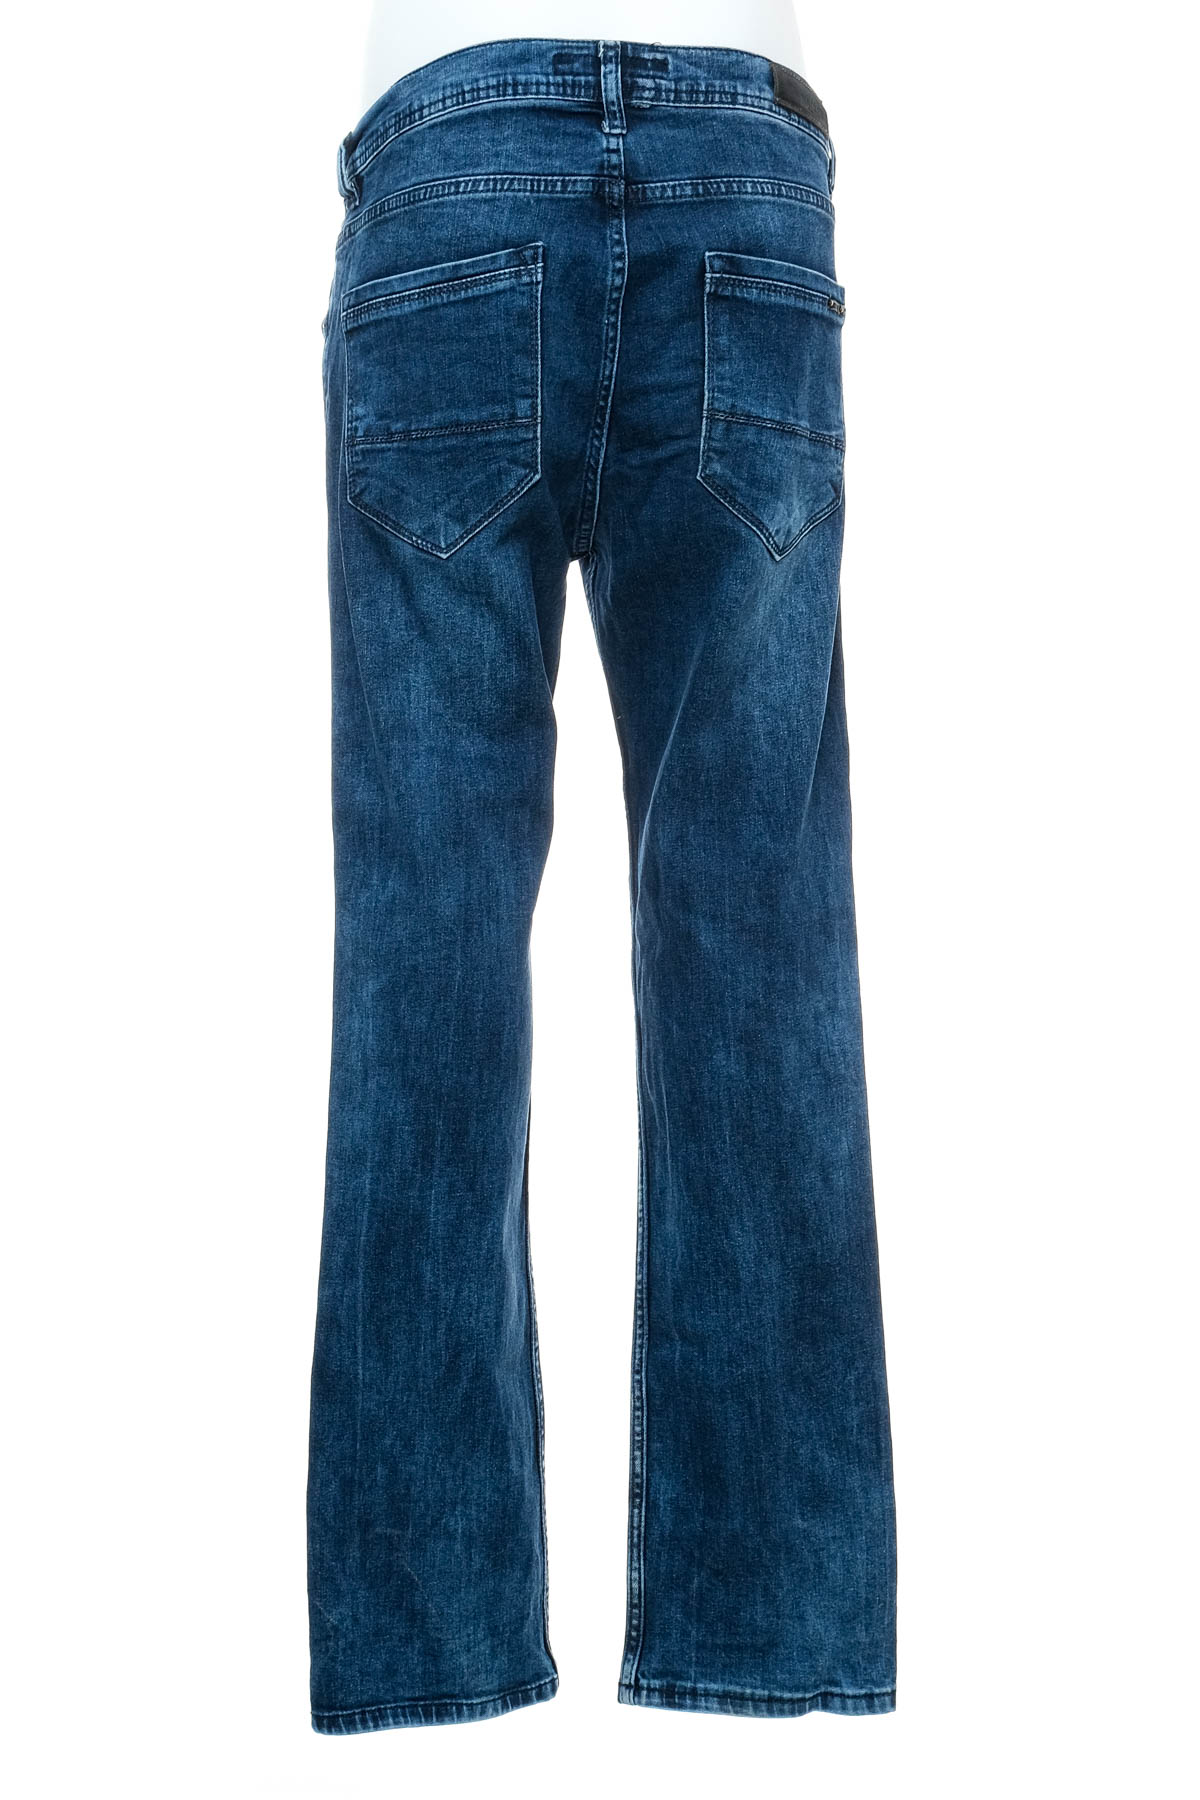 Men's jeans - Hacker - 1